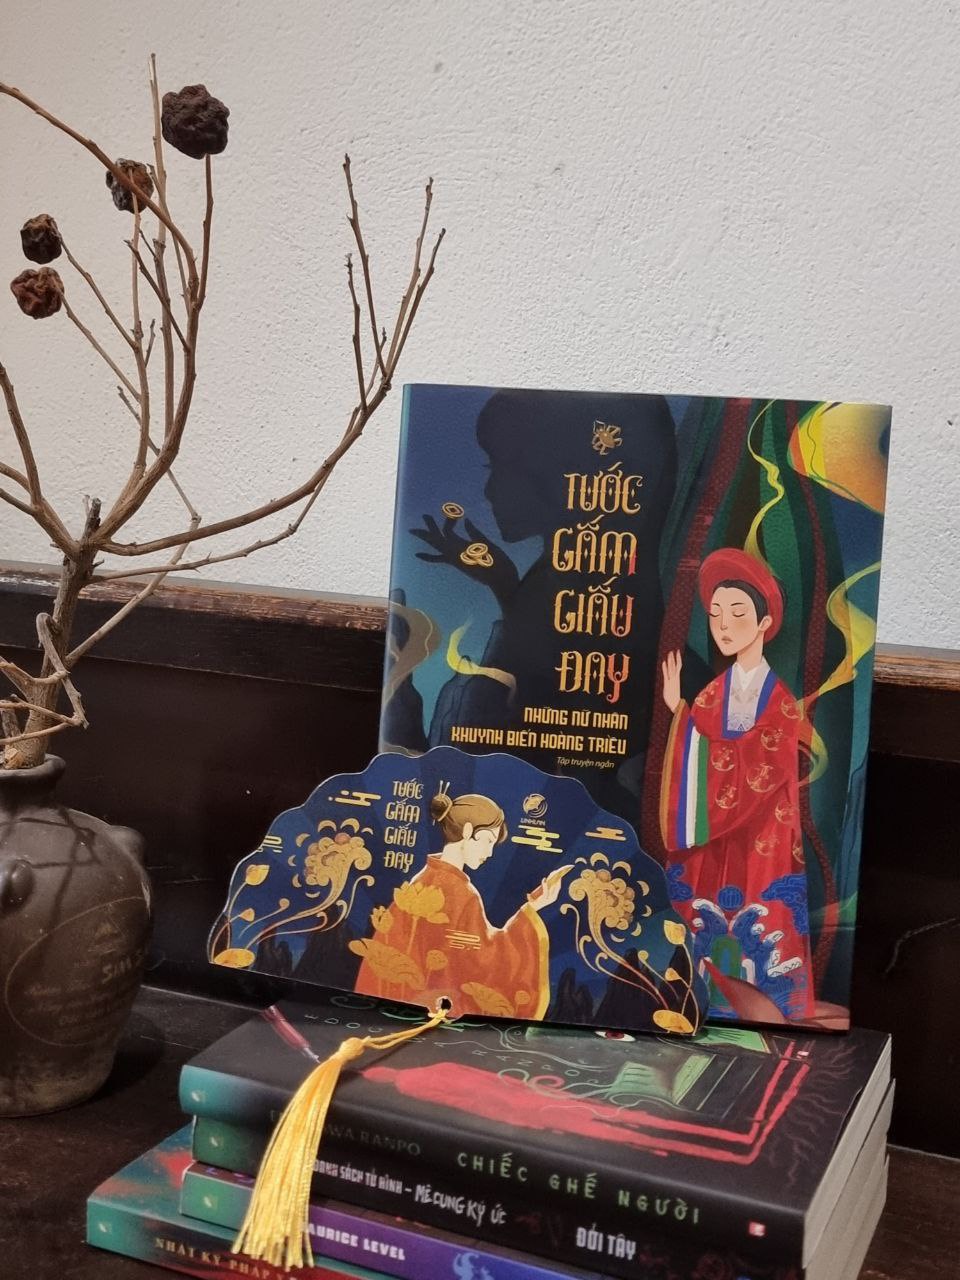 (Tặng bookmark quạt quân vương) (Ấn bản bìa cứng in 200c kỉ niệm) TƯỚC GẤM GIẤU ĐAY – Nhiều tác giả – Linh Lan Books